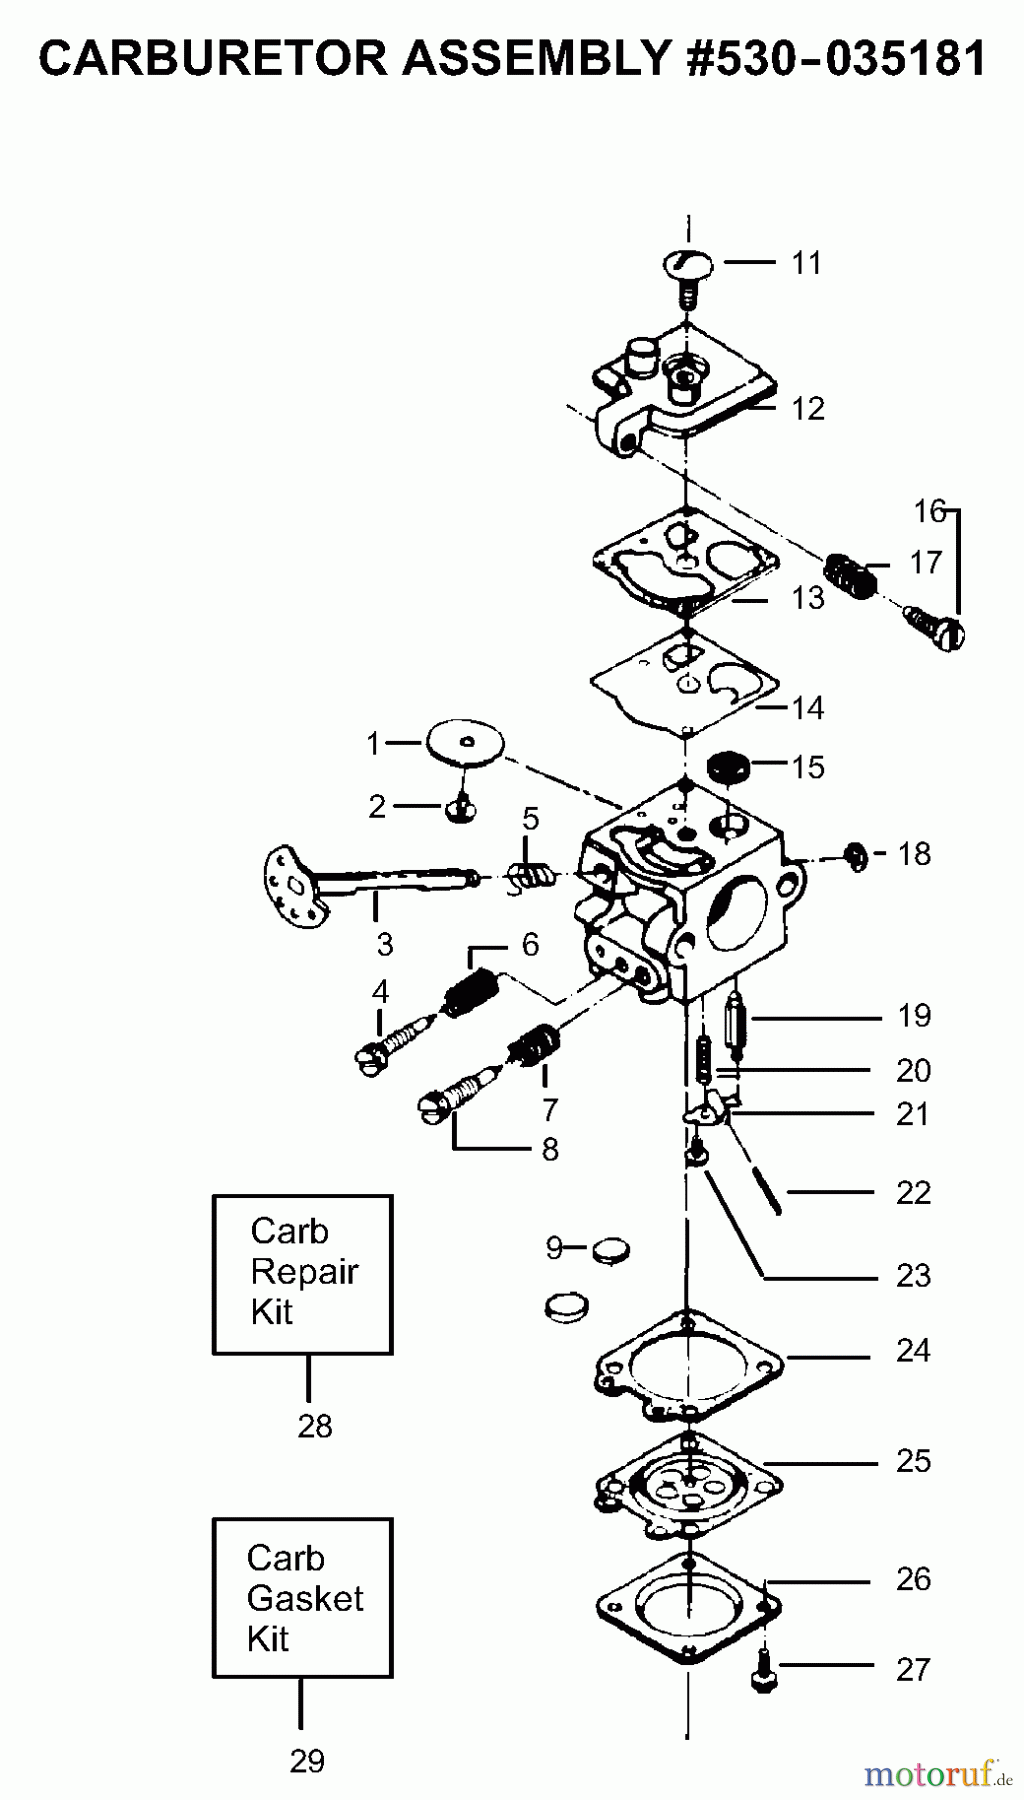  Poulan / Weed Eater Motorsägen PP225 - Poulan Pro Chainsaw Carburetor Assembly P/N 530035181